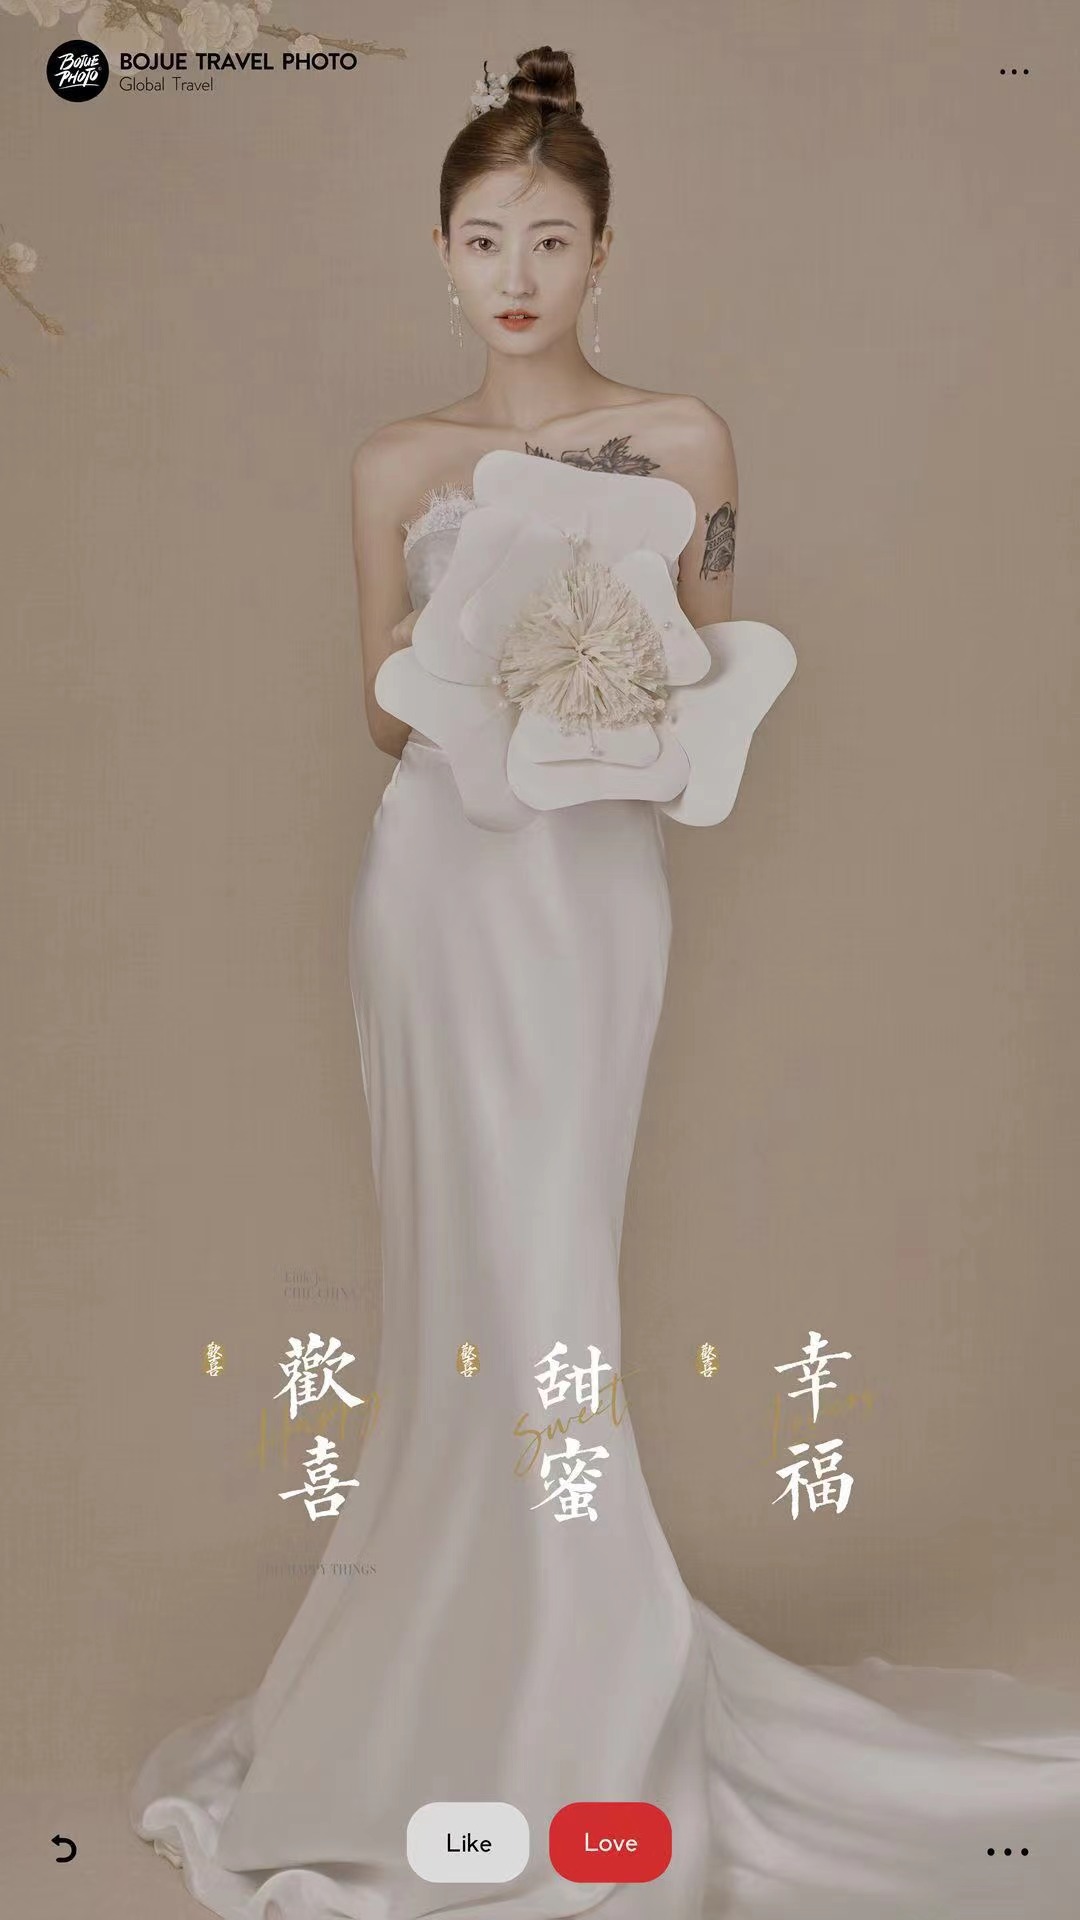 分享我在铂爵旅拍北京店拍的婚纱照